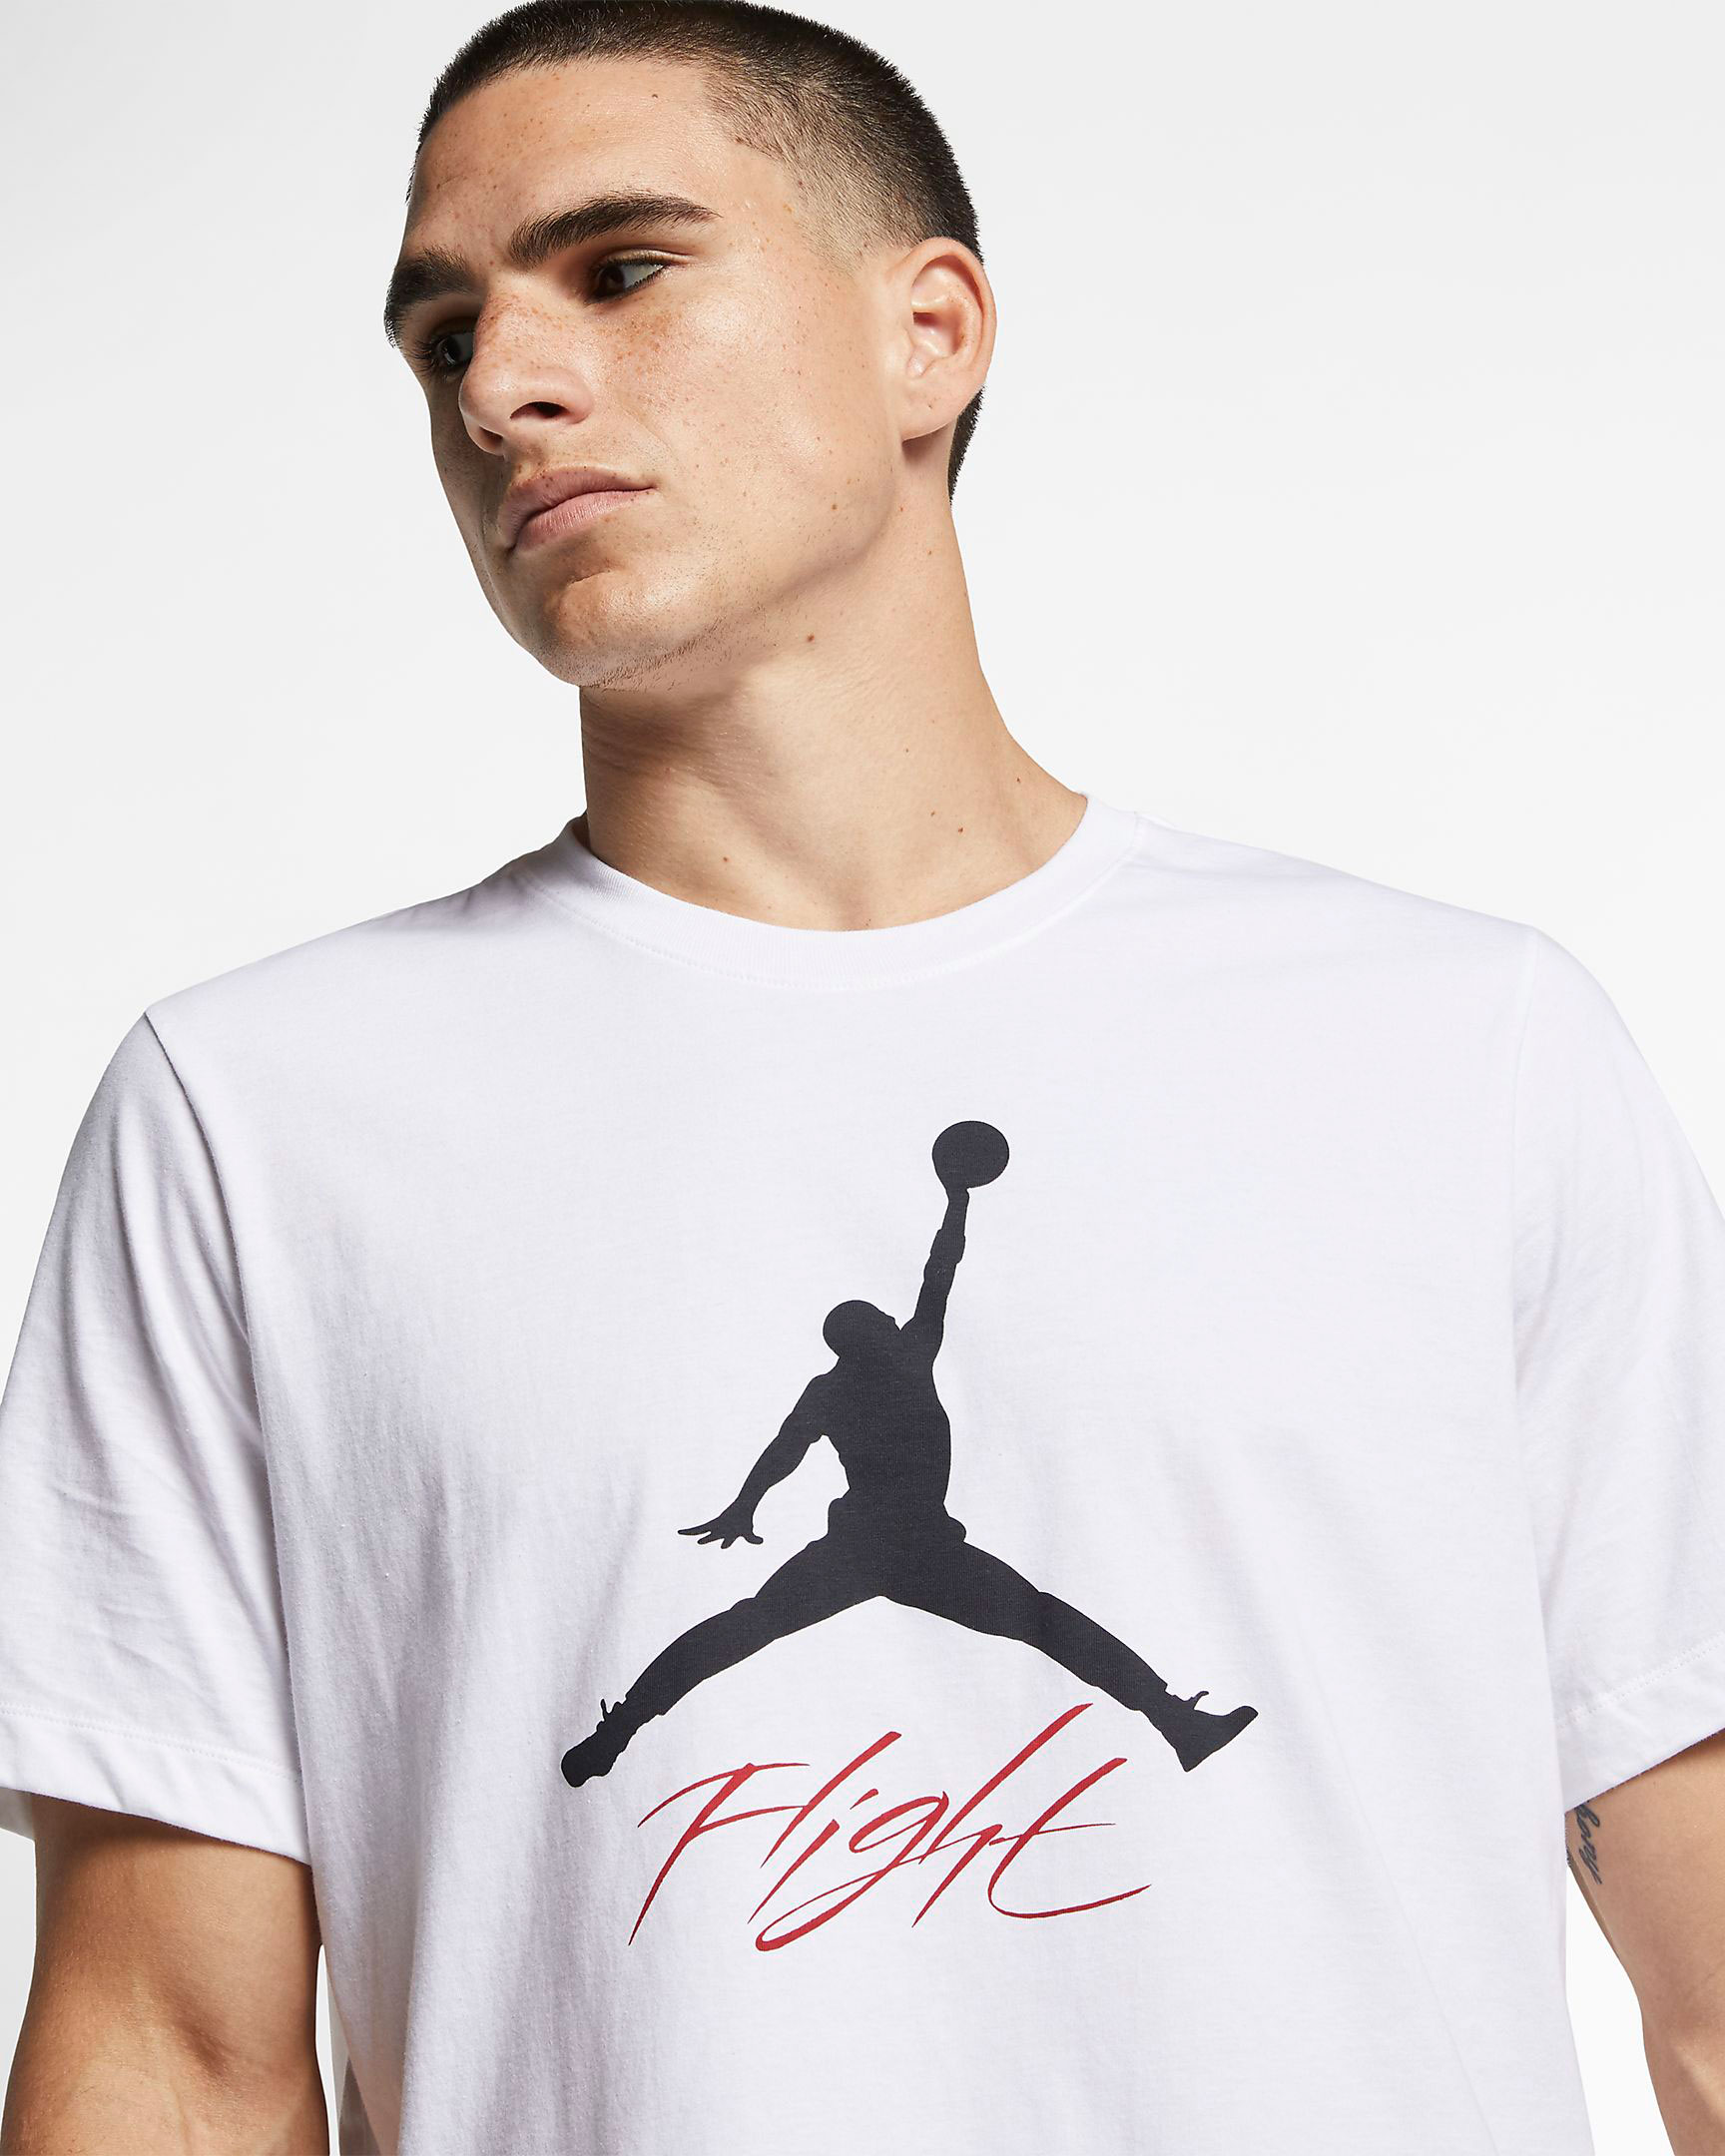 Bred Jordan 4 Matching T Shirt | SneakerFits.com